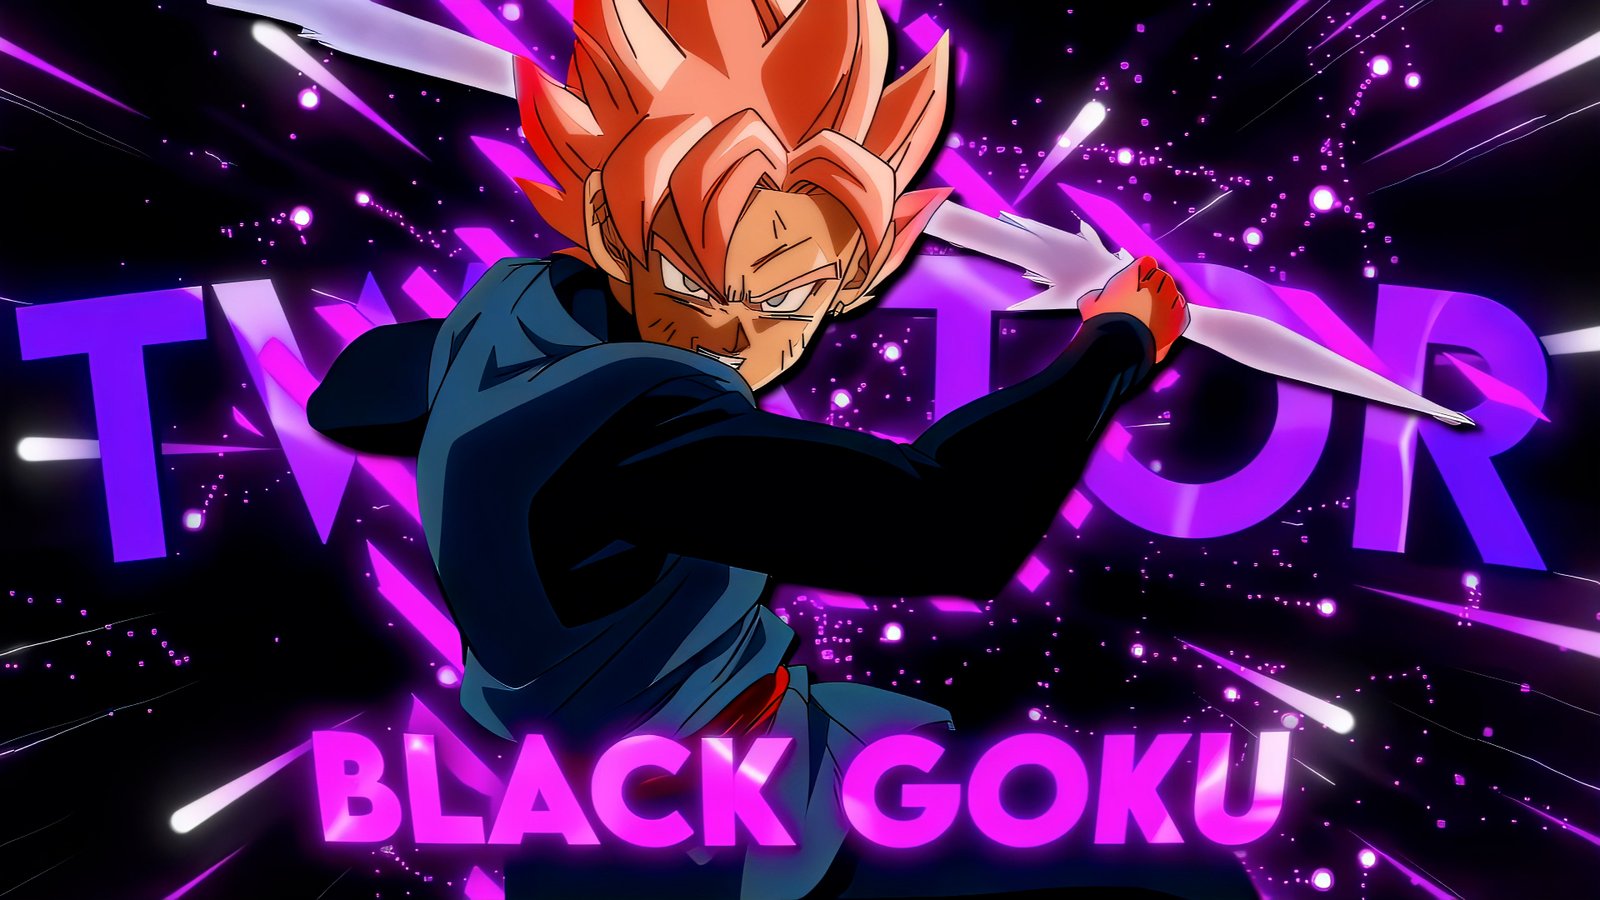 Black Goku Twixtor